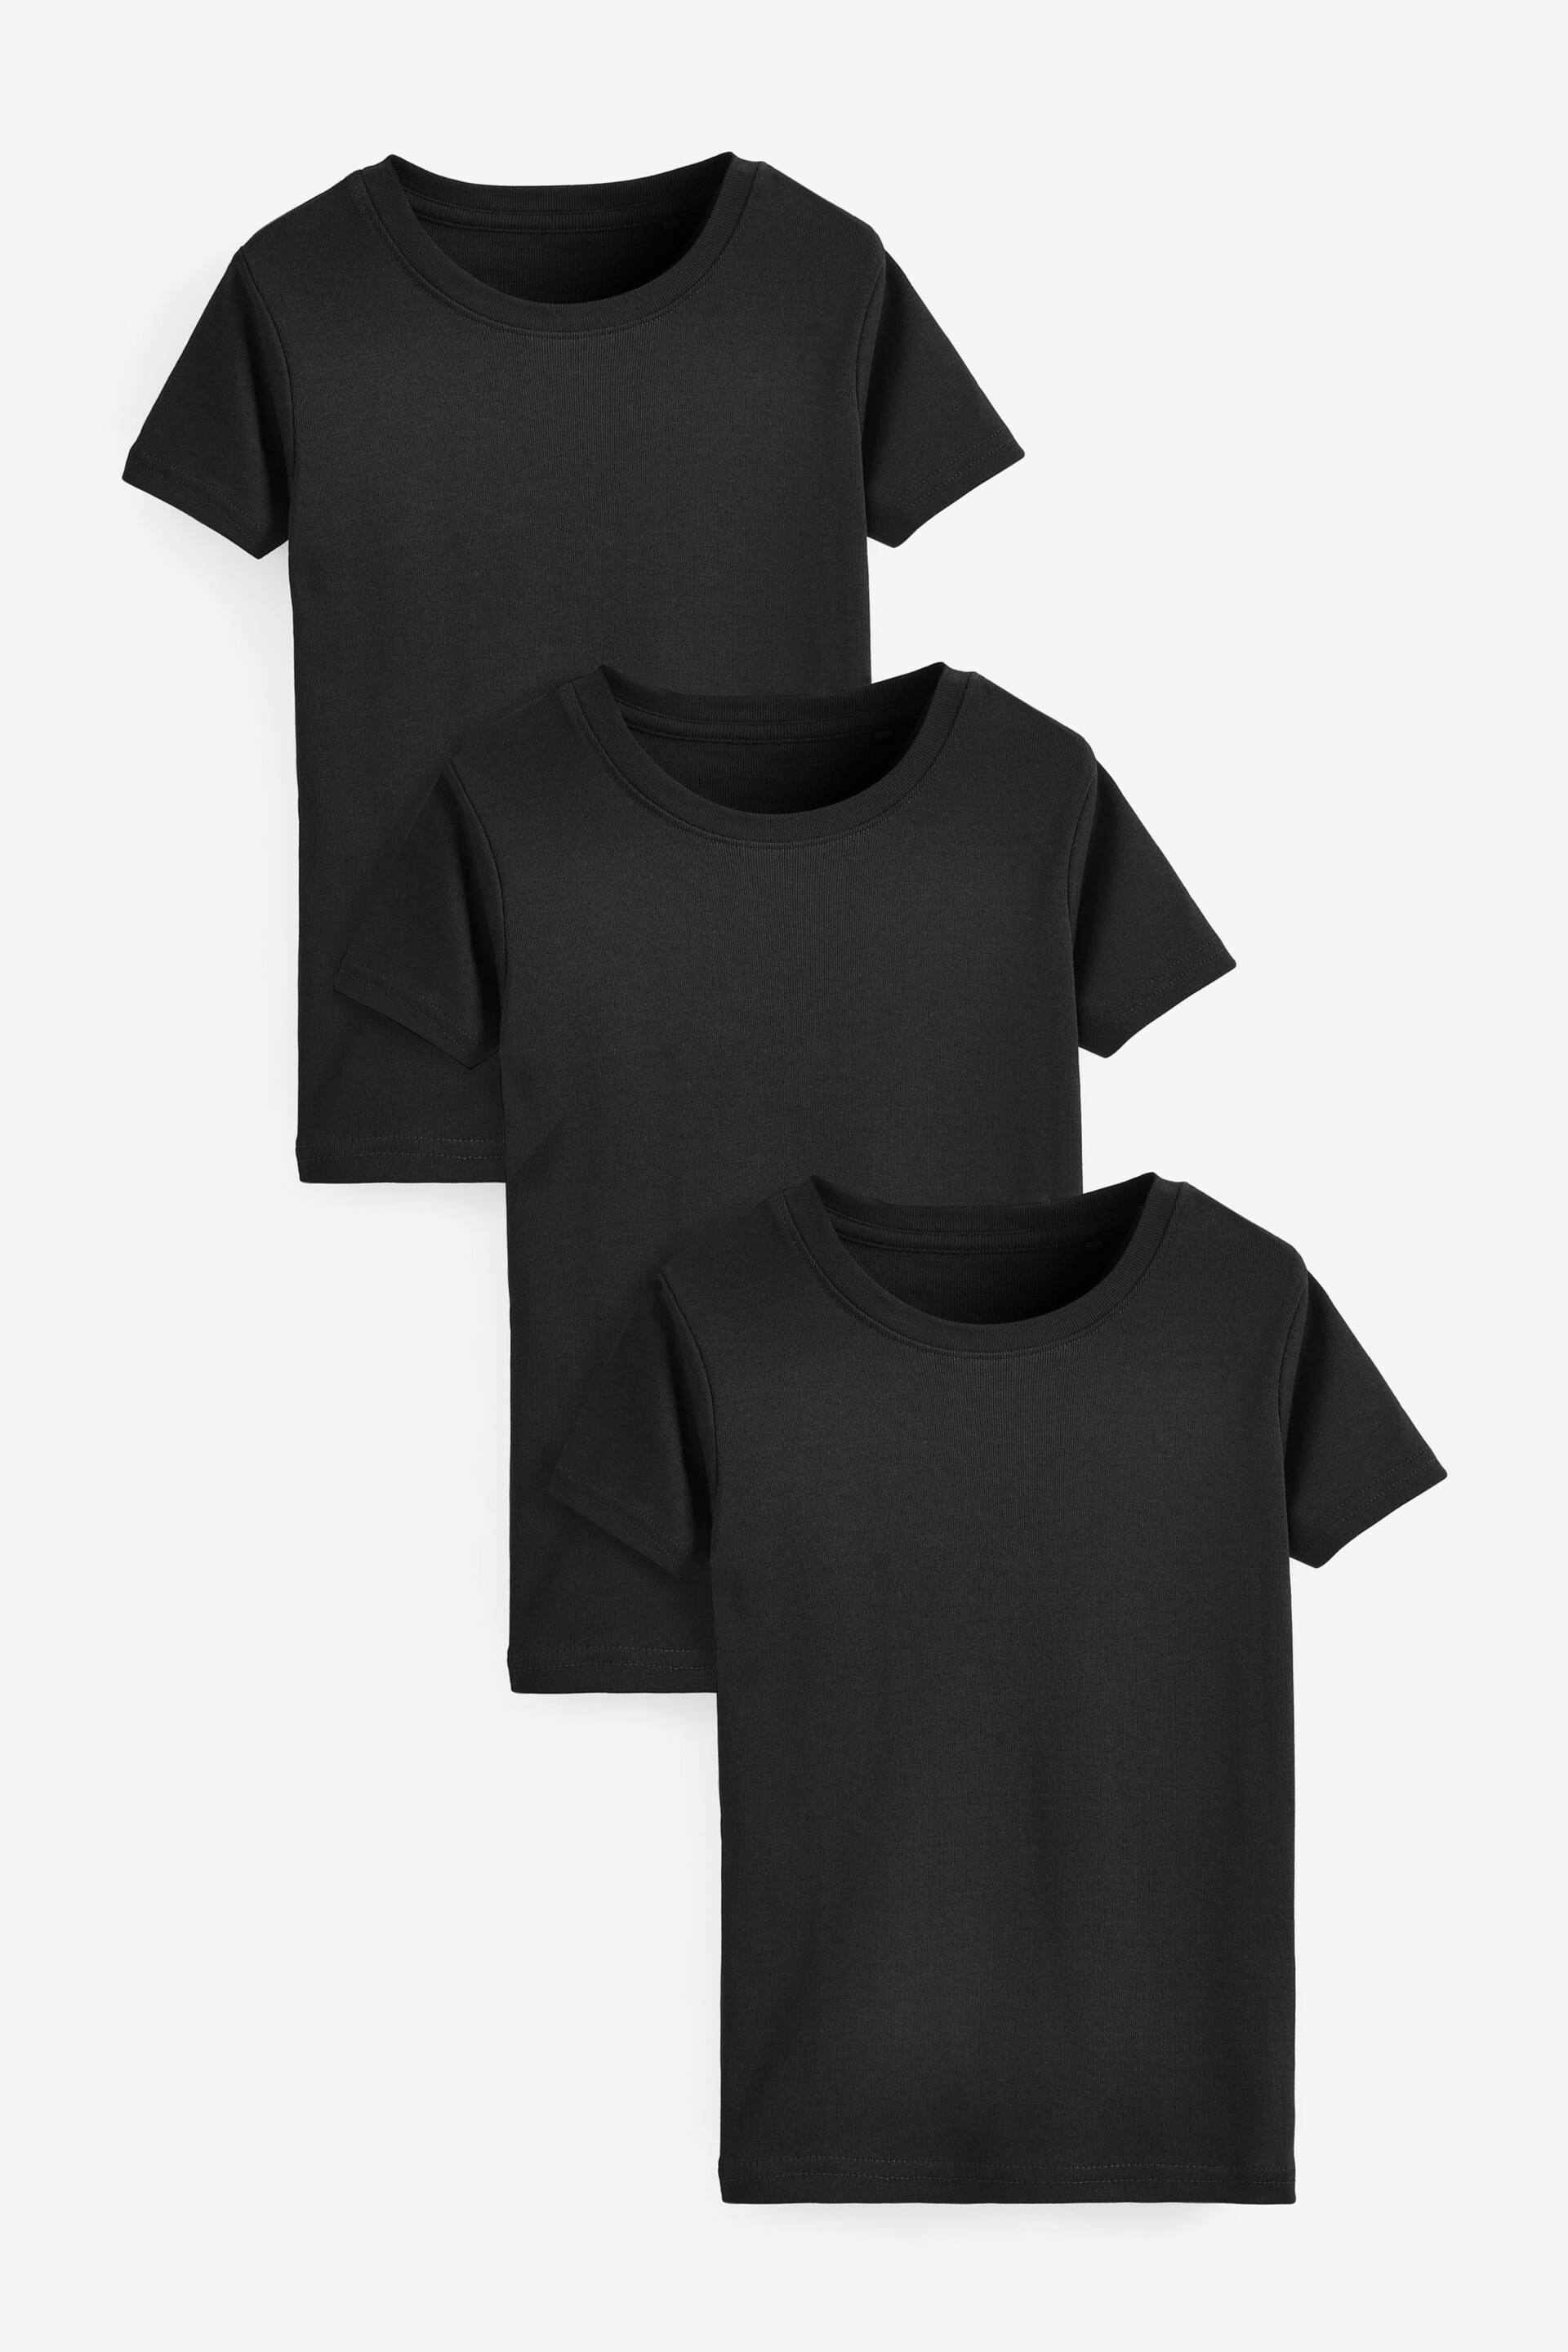 Black Short Sleeve Vest 3 Pack (1.5-16yrs) - Image 1 of 3